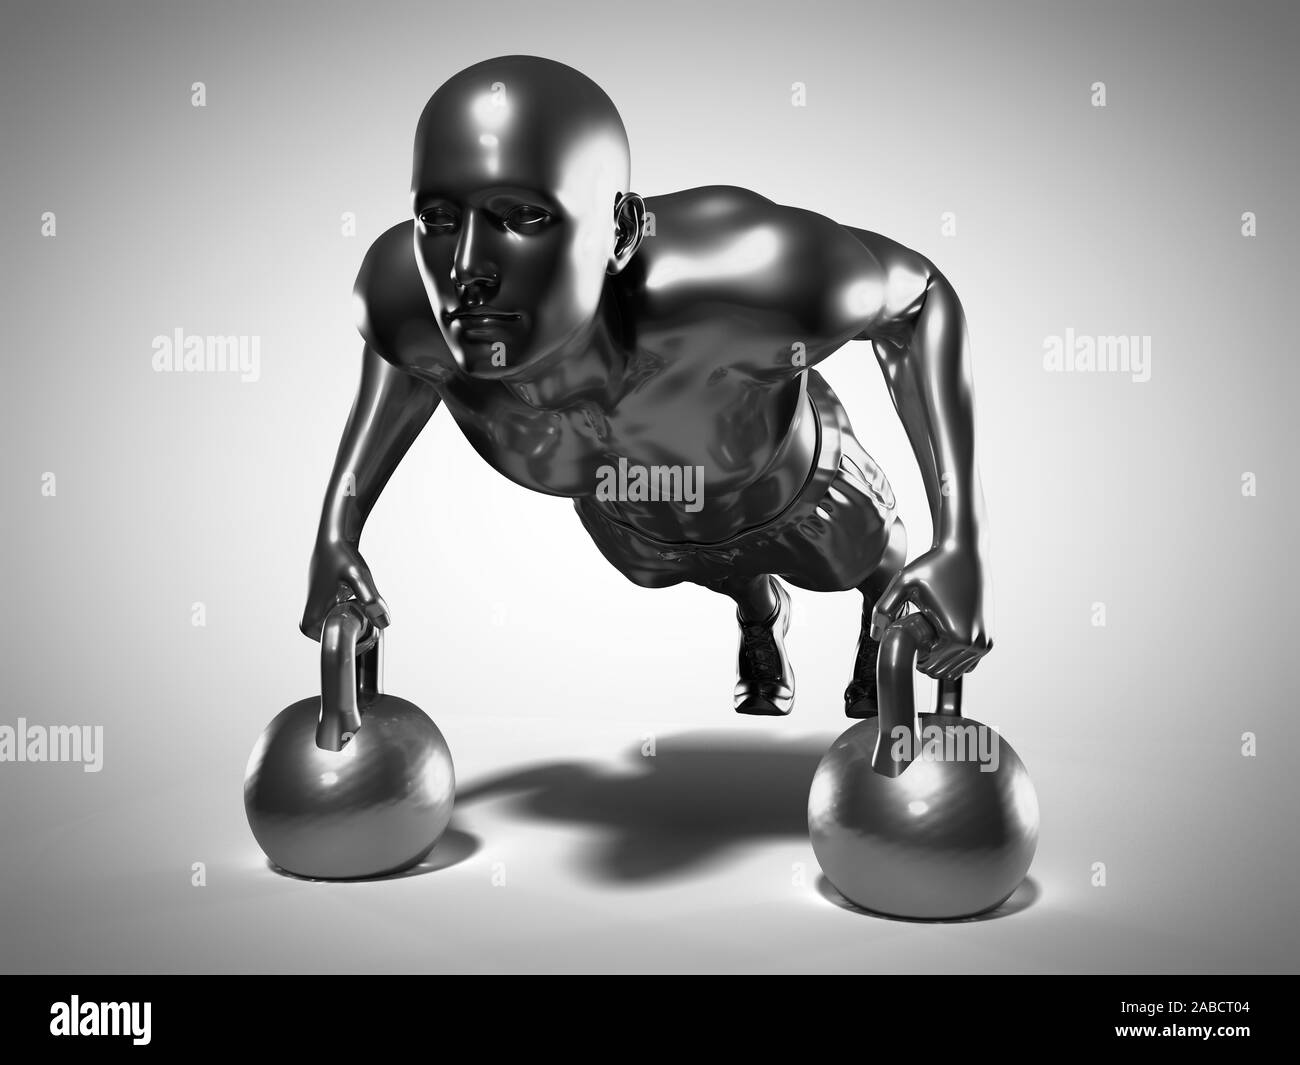 Médicalement en rendu 3d illustration d'un précise metallic man faisant un kettlebell workout Banque D'Images